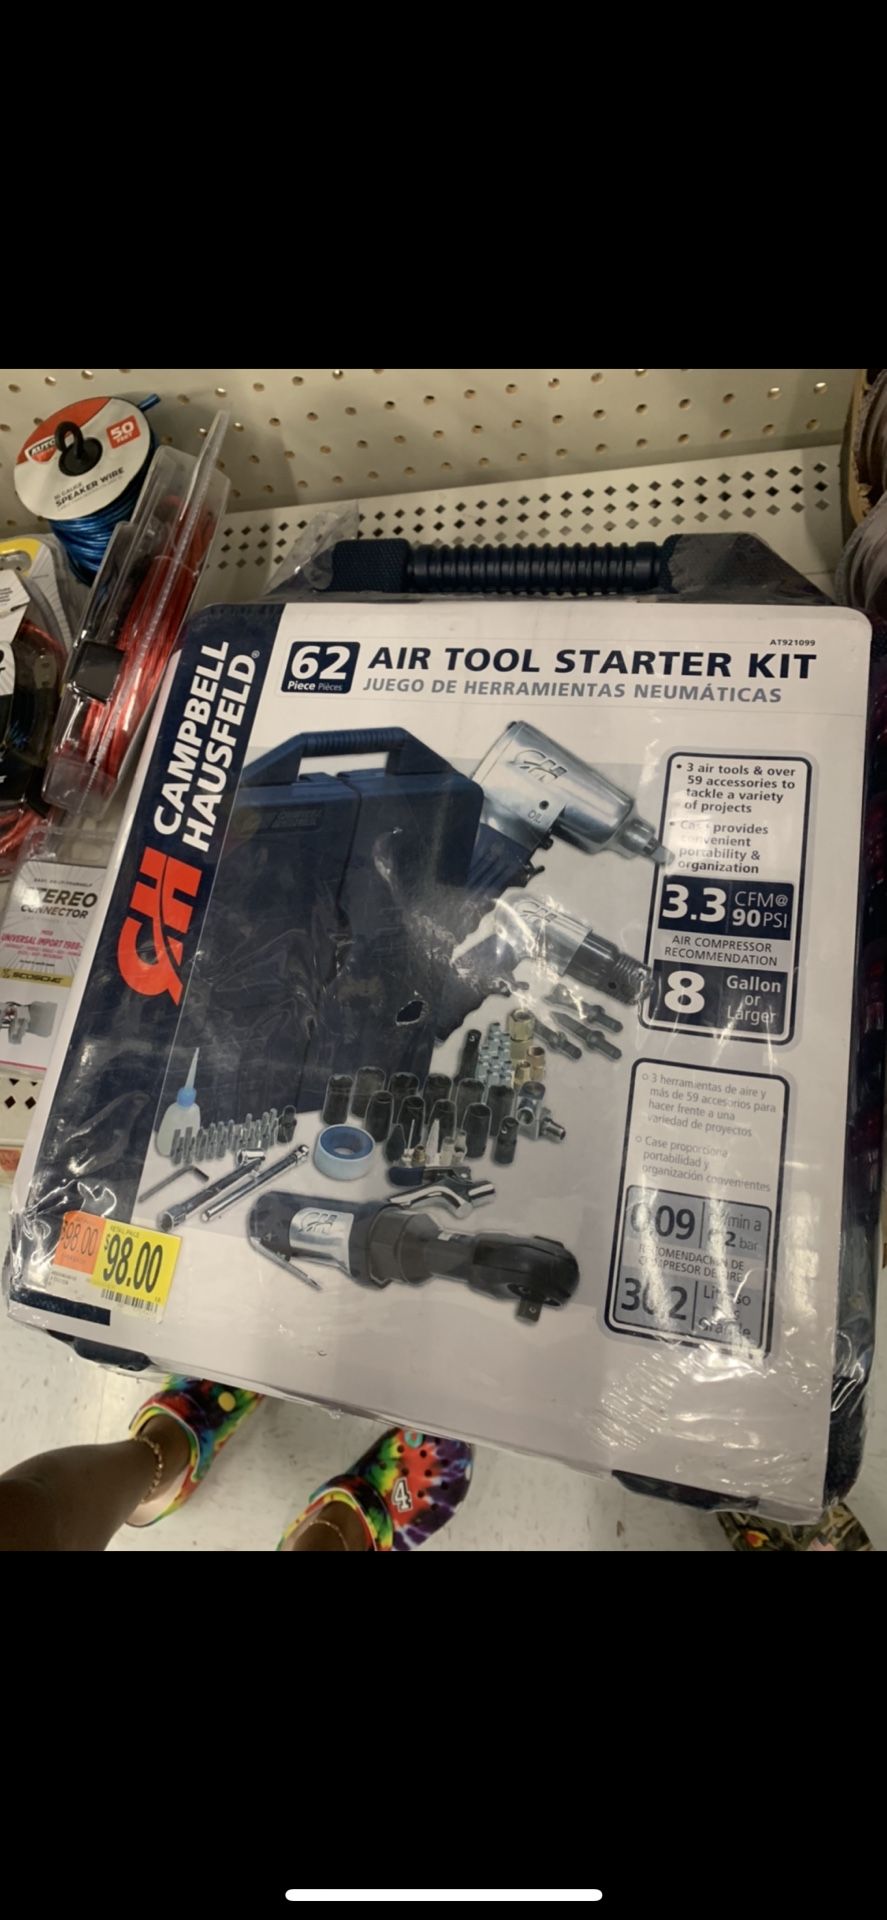 Air tool starter kit